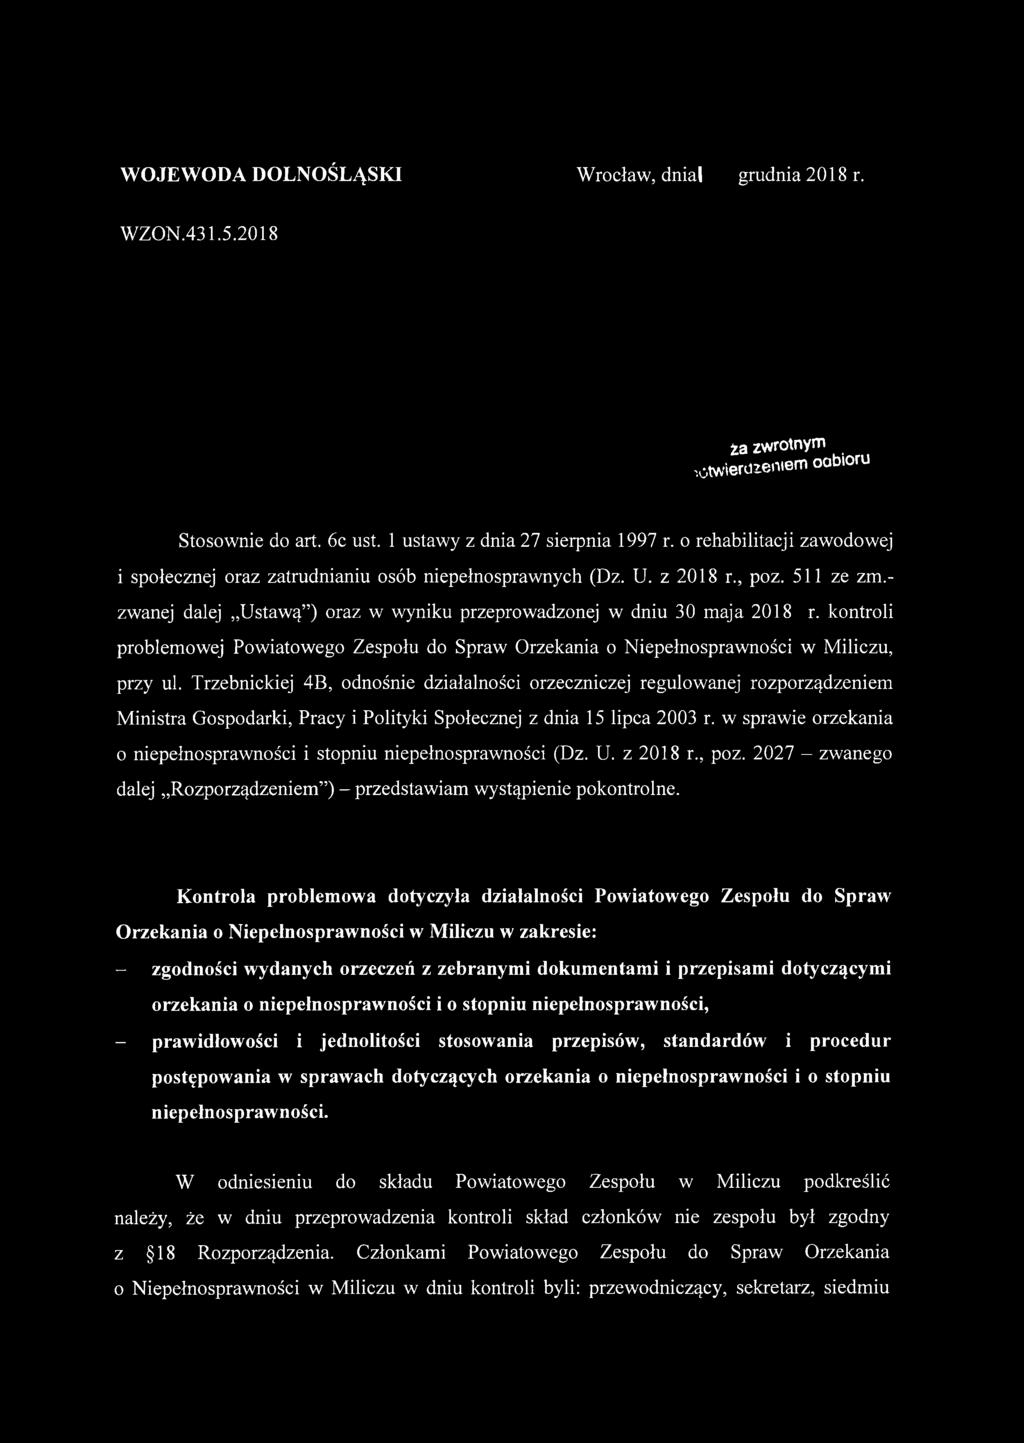 kontroli problemowej Powiatowego Zespołu do Spraw Orzekania o Niepełnosprawności w Miliczu, przy ul.